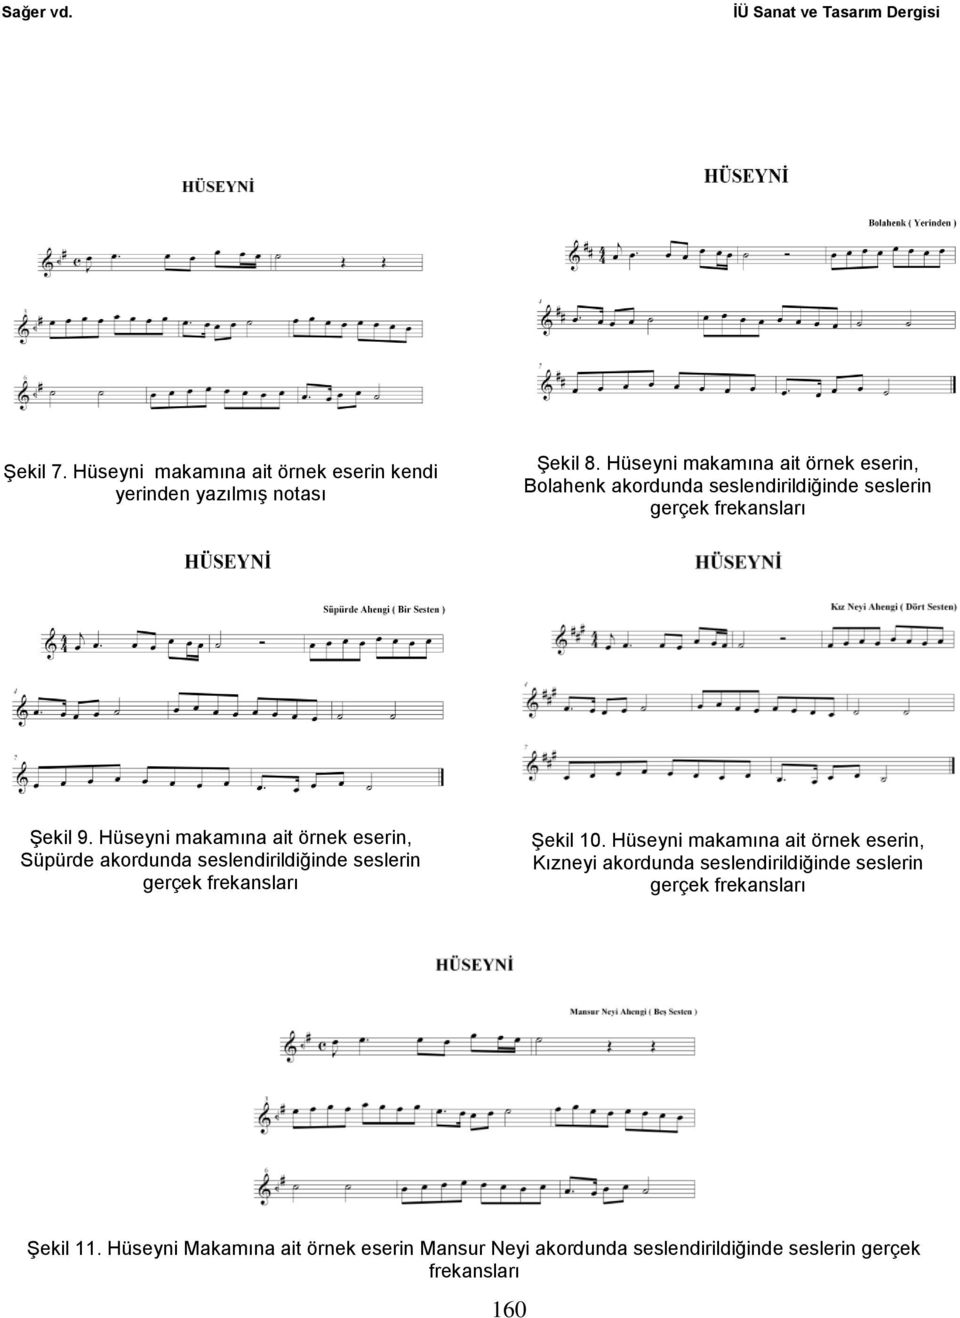 Hüseyni makamına ait örnek eserin, Süpürde akordunda seslendirildiğinde seslerin Şekil 10.